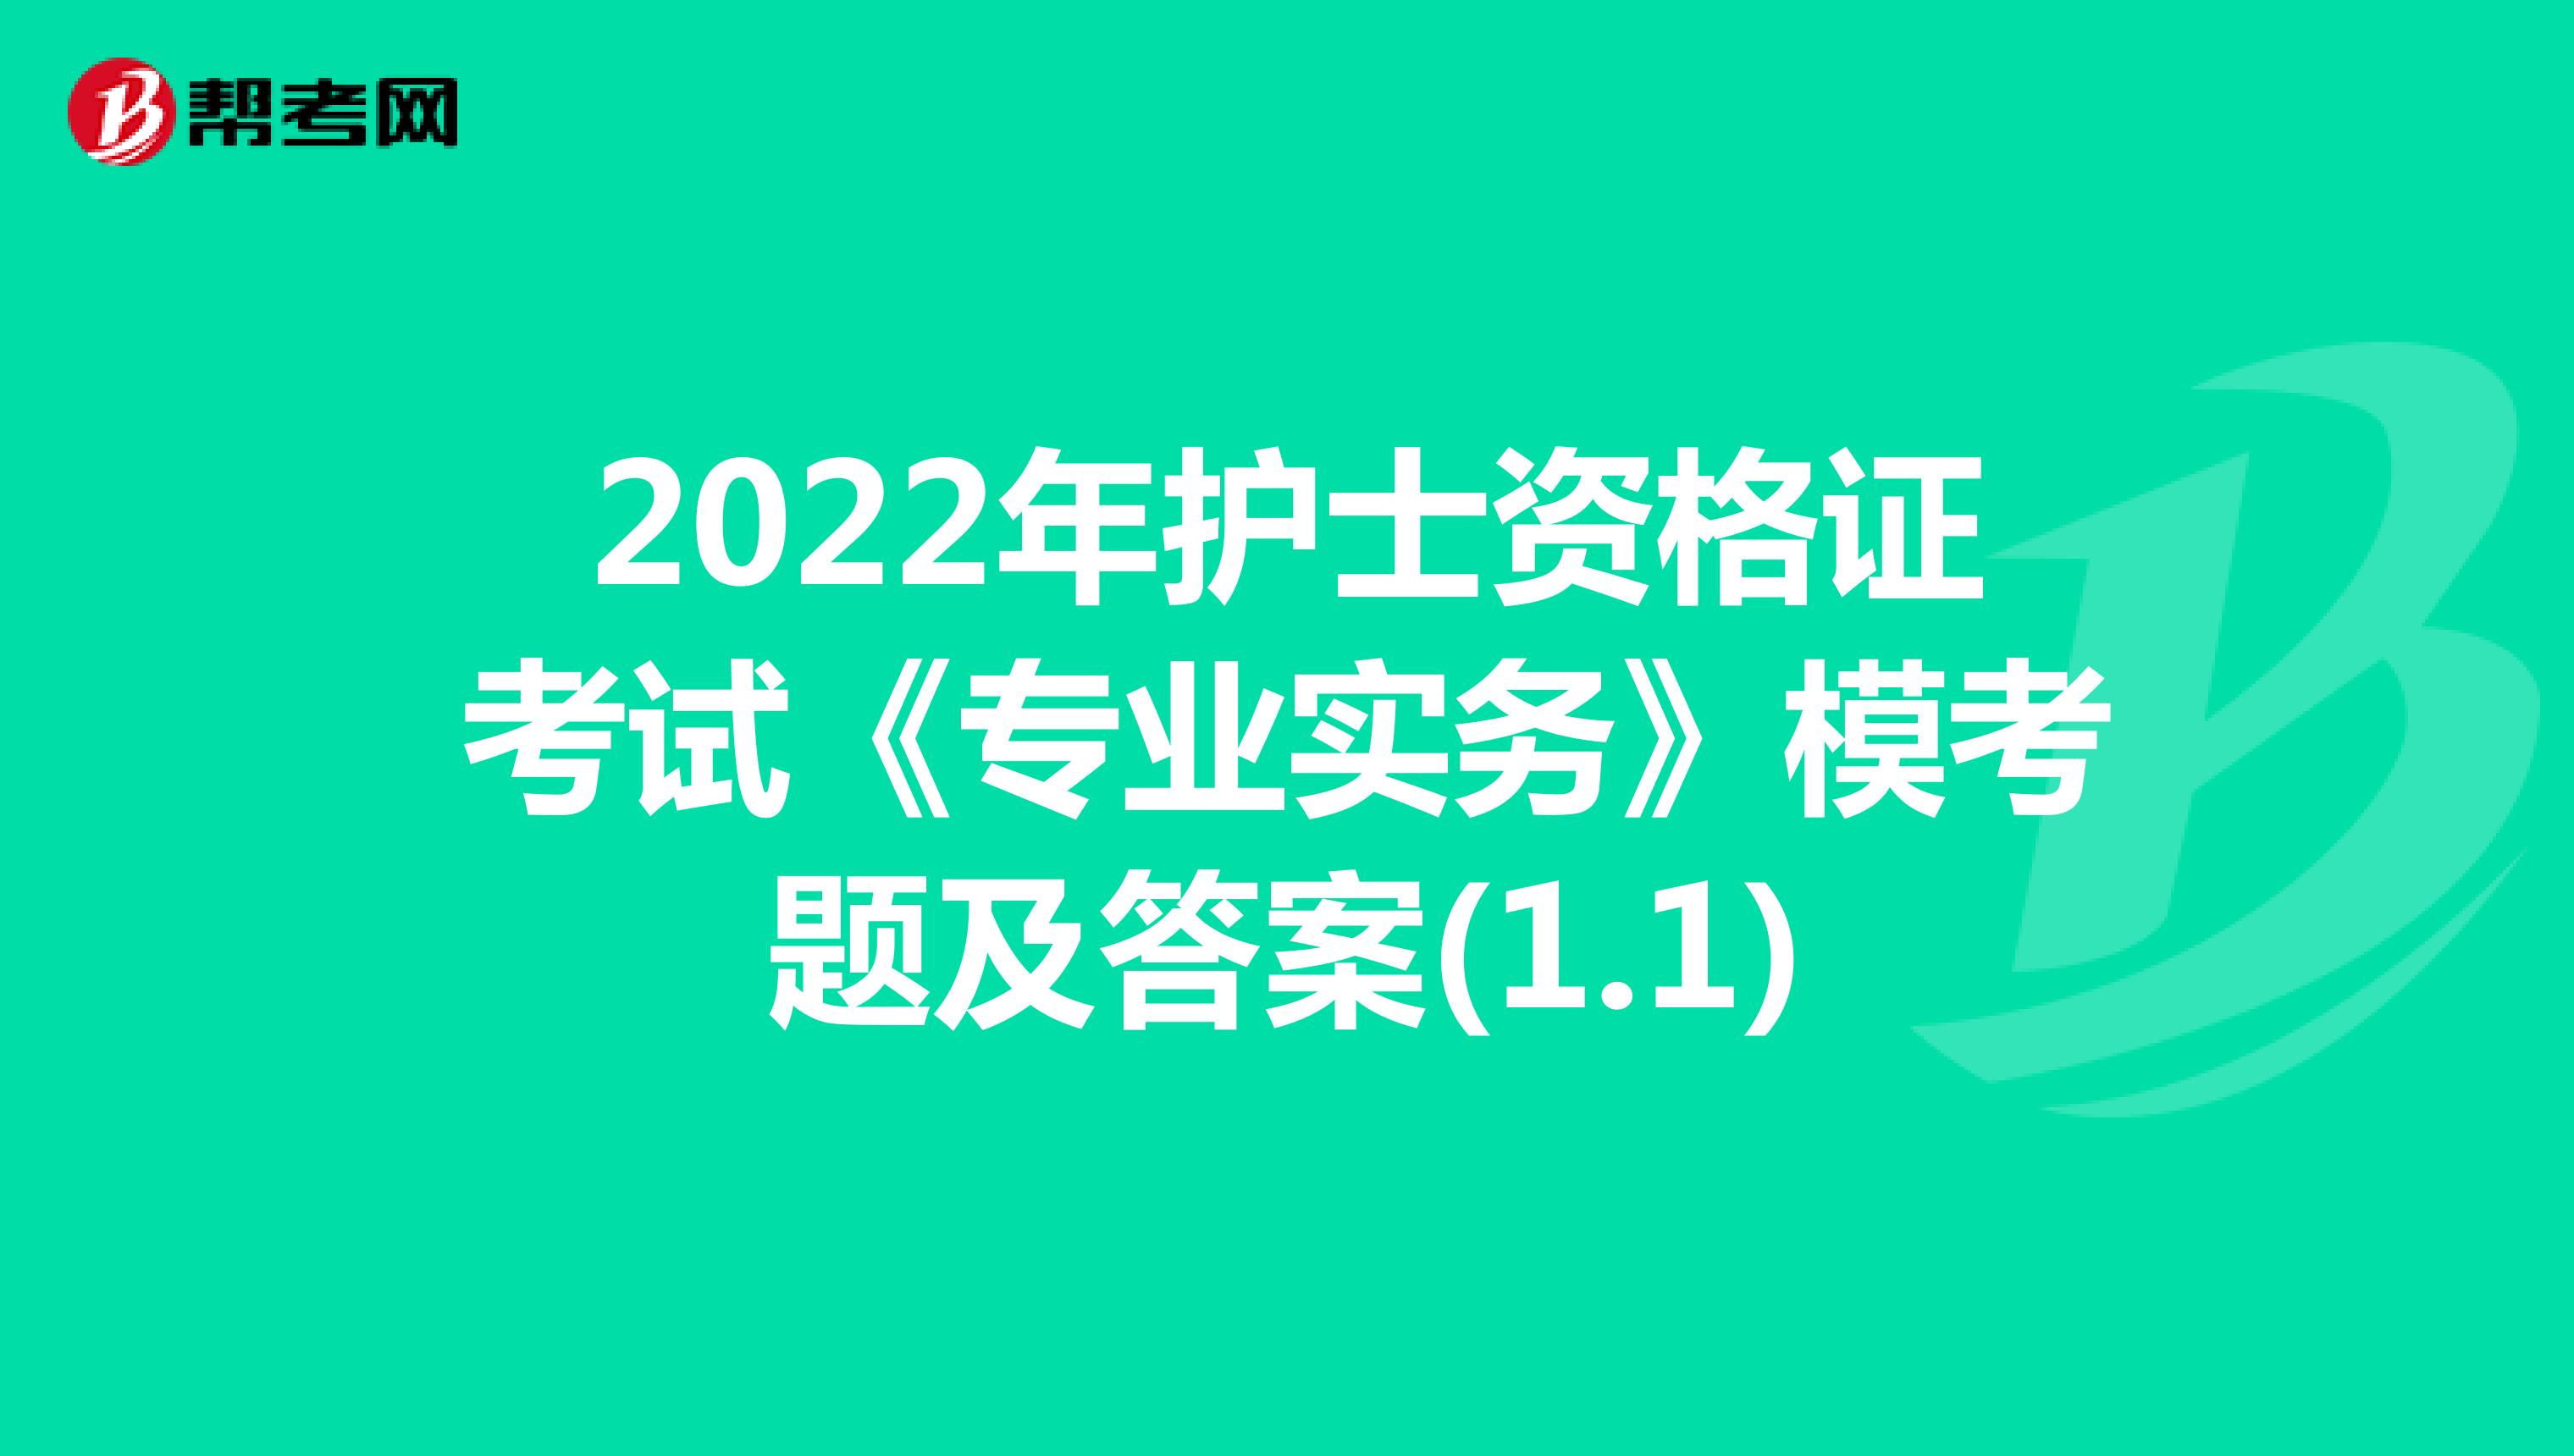 2022年护士资格证考试《专业实务》模考题及答案(1.1)